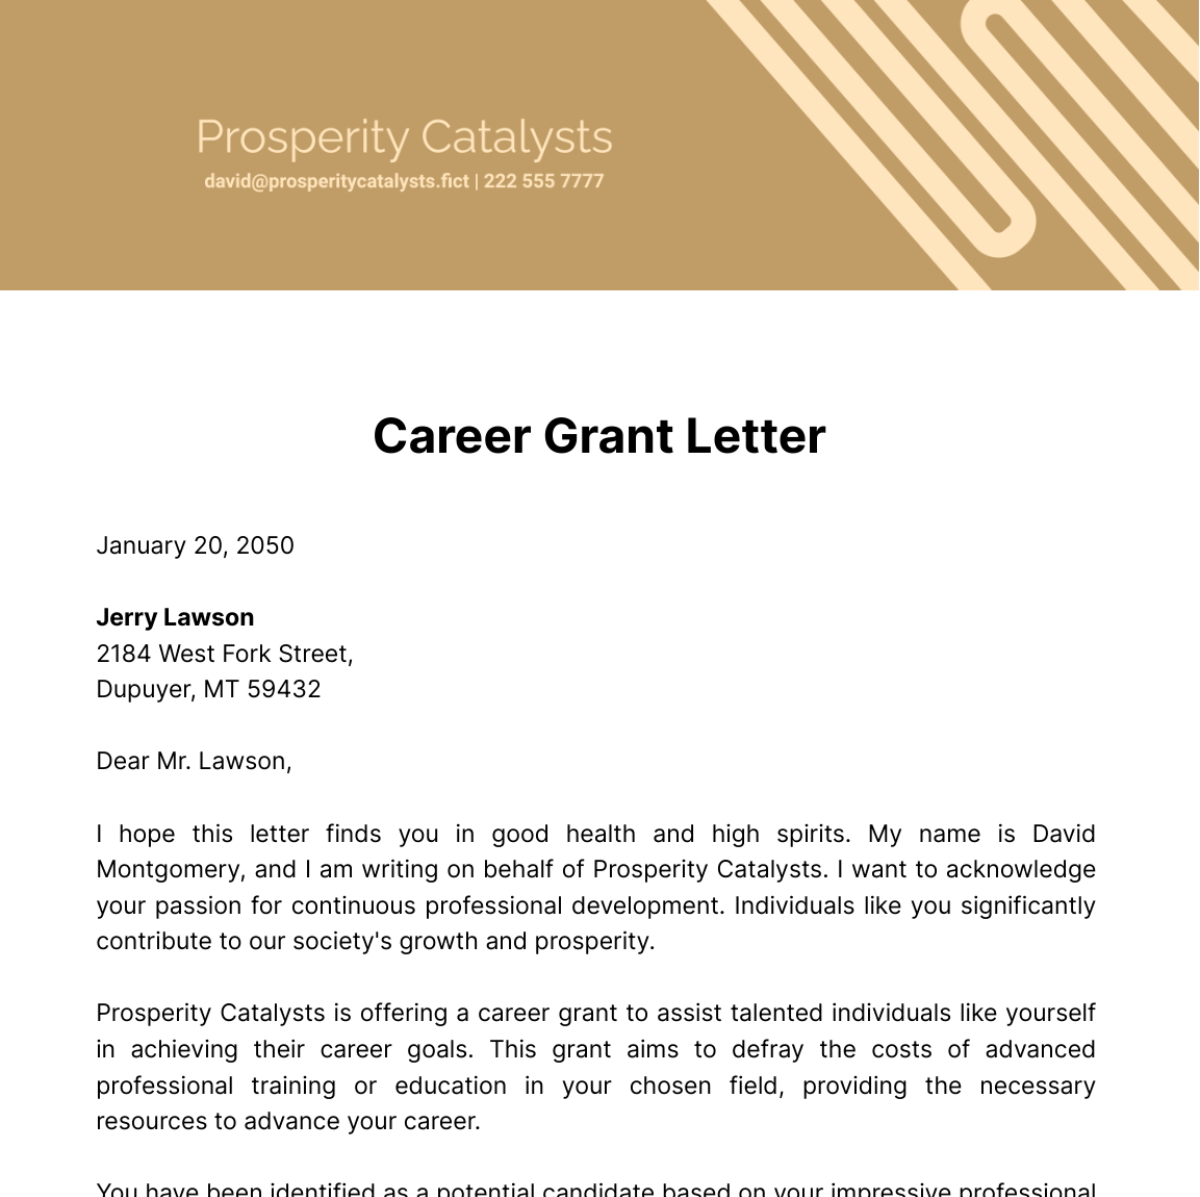 Career Grant Letter Template